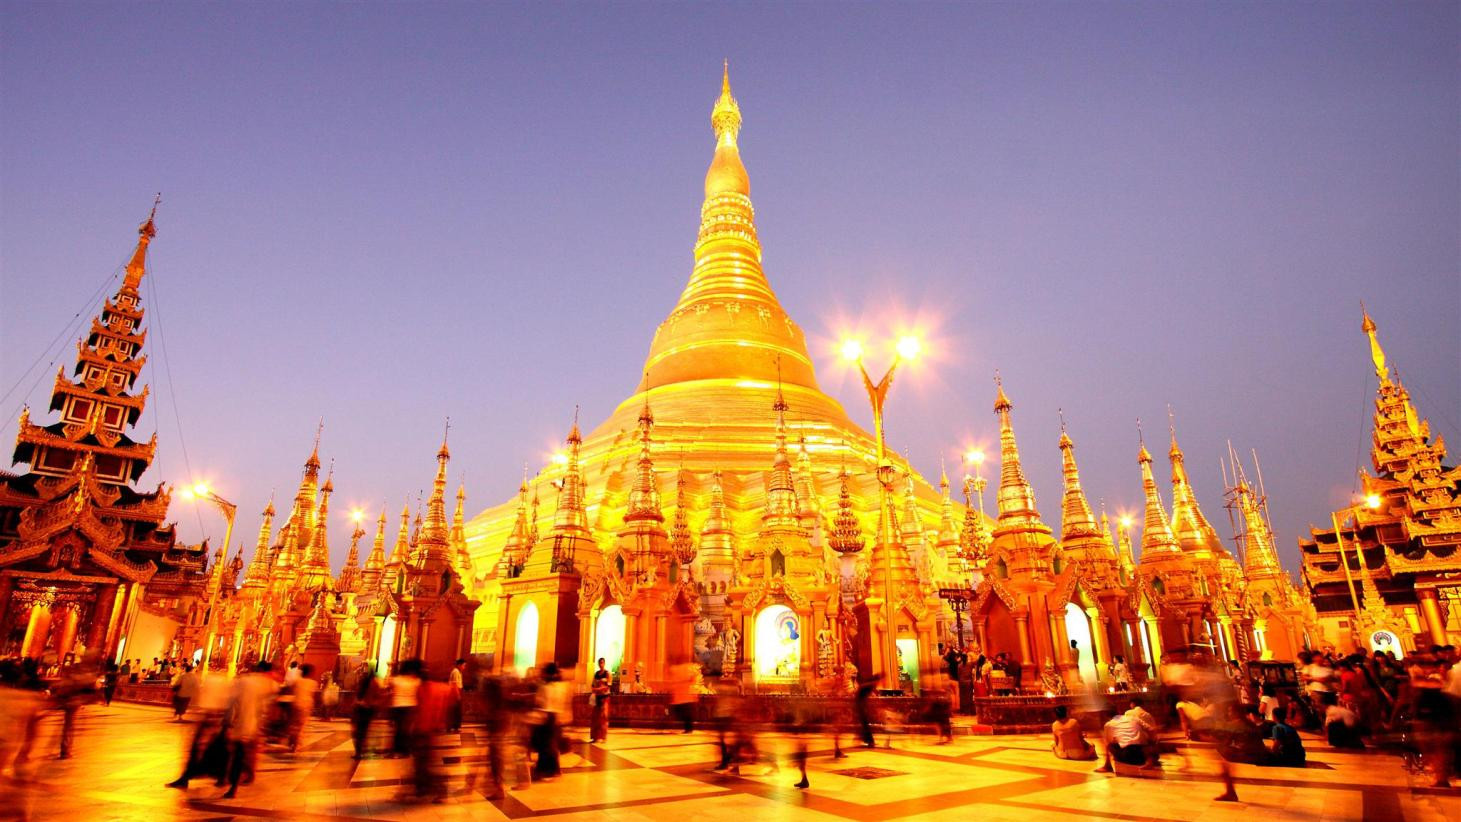 Sở hữu cho mình những điểm du lịch đẹp và nền văn hóa cổ, Myanmar đã trở thành một điểm đến của rất nhiều du khách Việt.